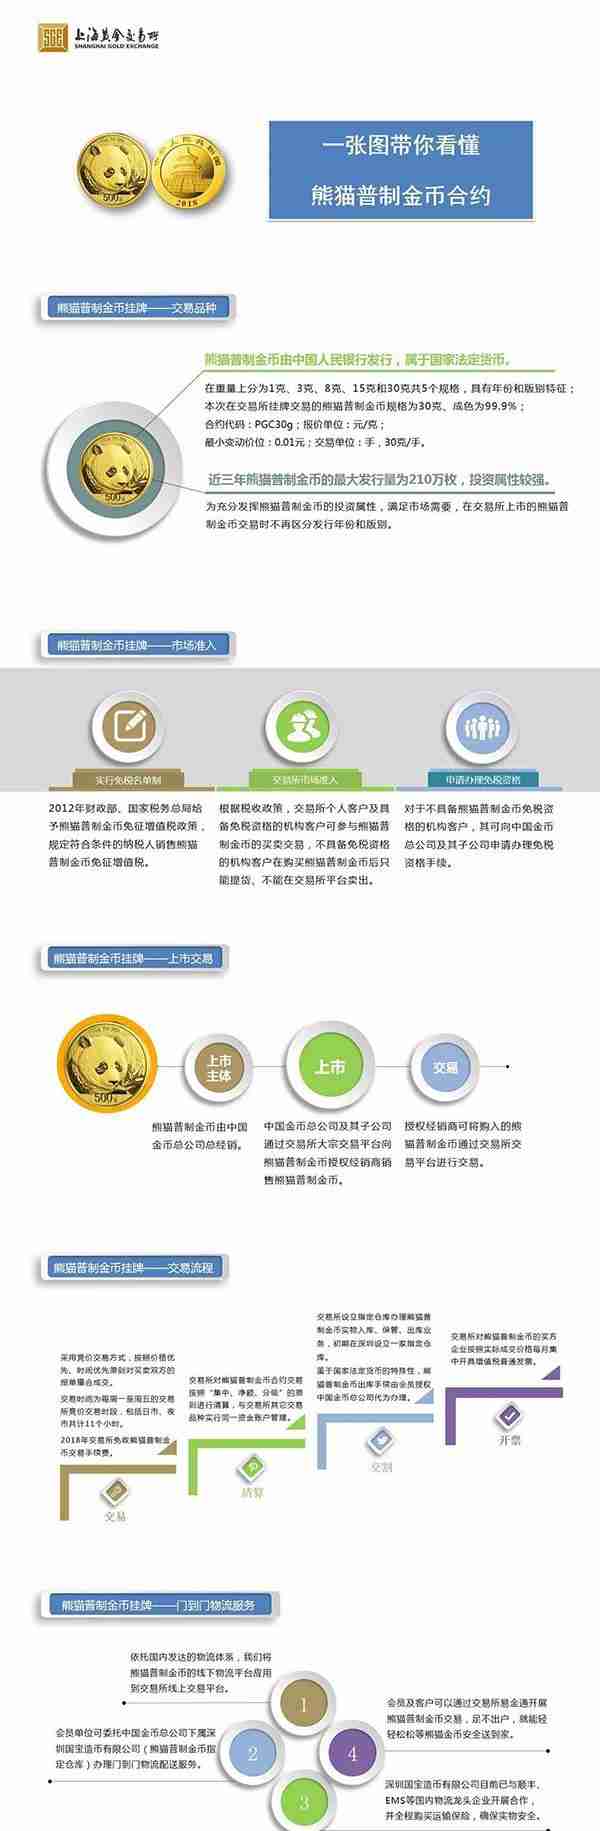 熊猫金币在上海黄金交易所正式挂牌，属全球五大投资金币之一